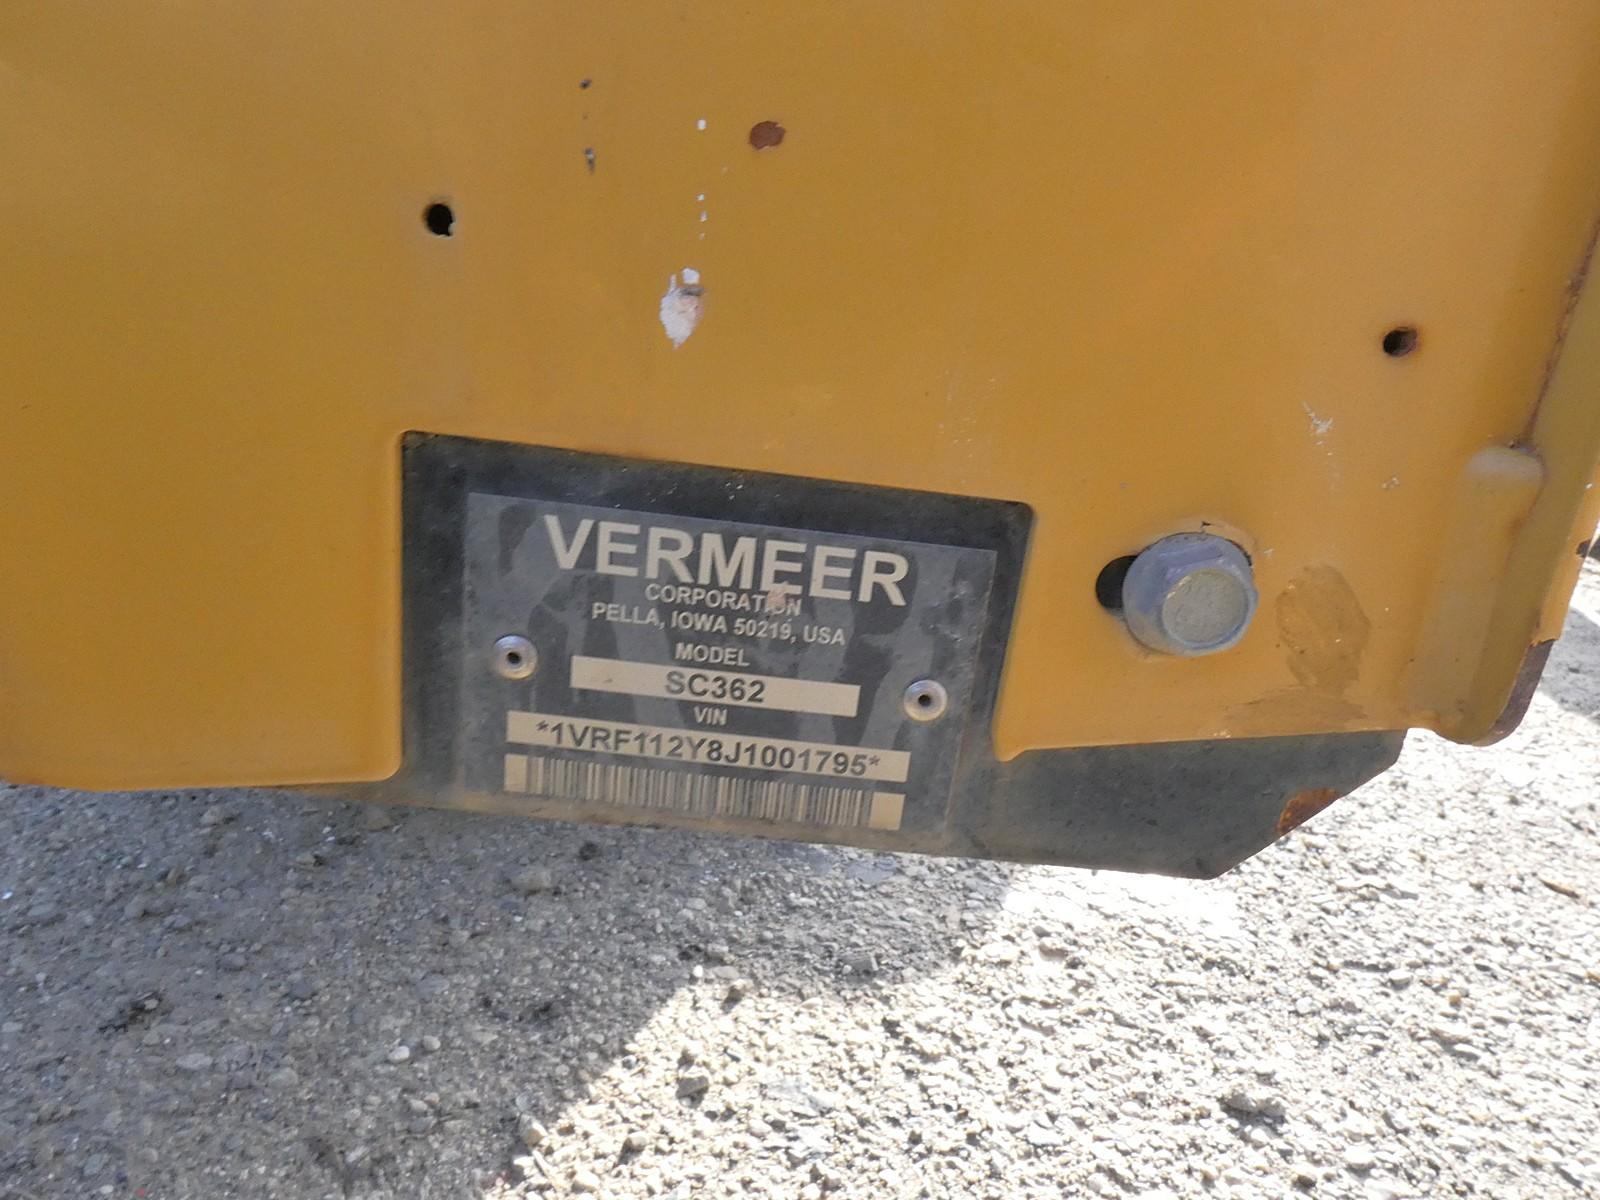 2018 Vermeer SC362 Stump Cutter, SN:1VRF112Y8J1001795, 30hp Gas, 816.3 hrs.